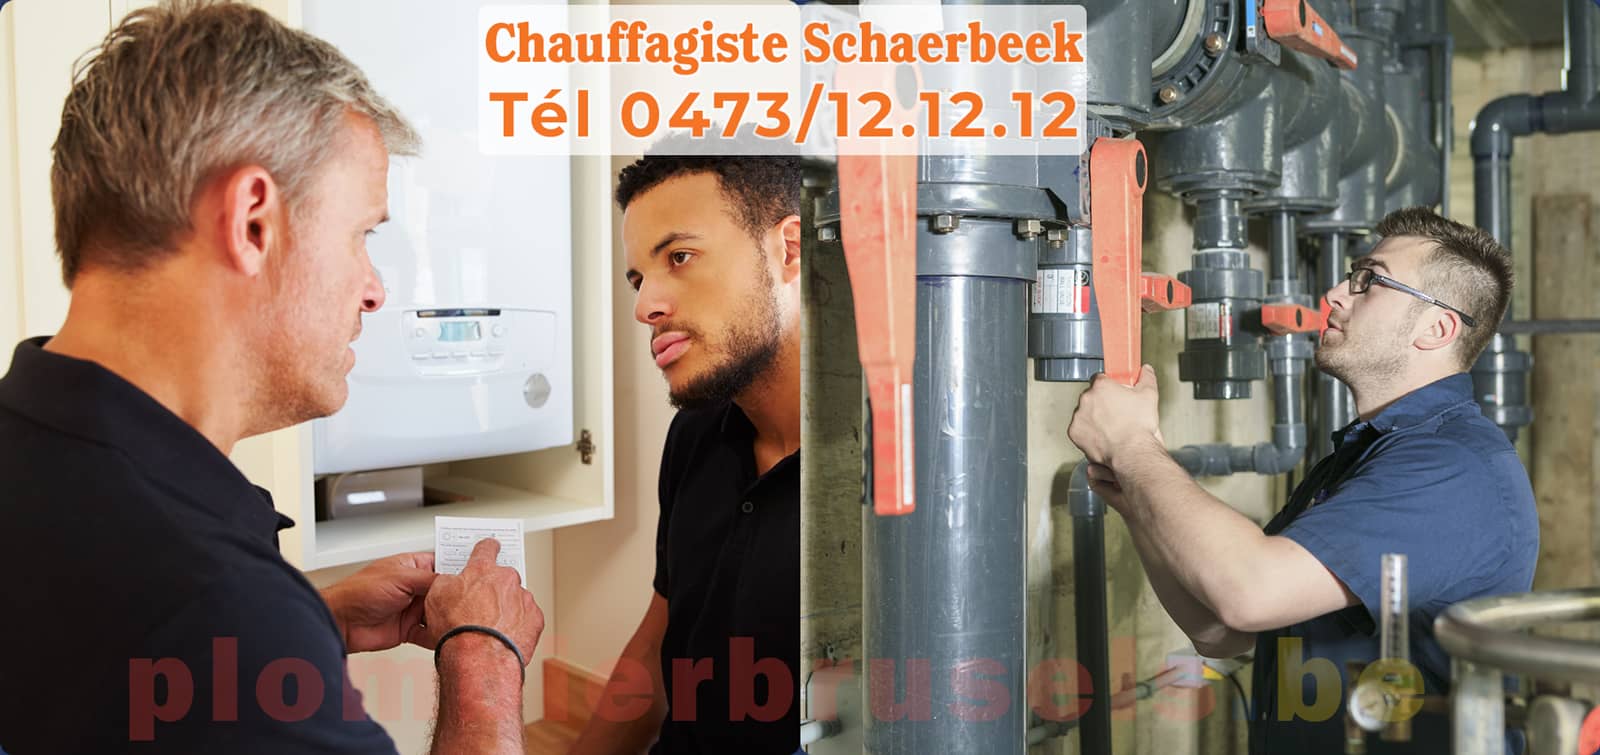 Chauffagiste Schaerbeek service de Chauffage tél 0473/12.12.12